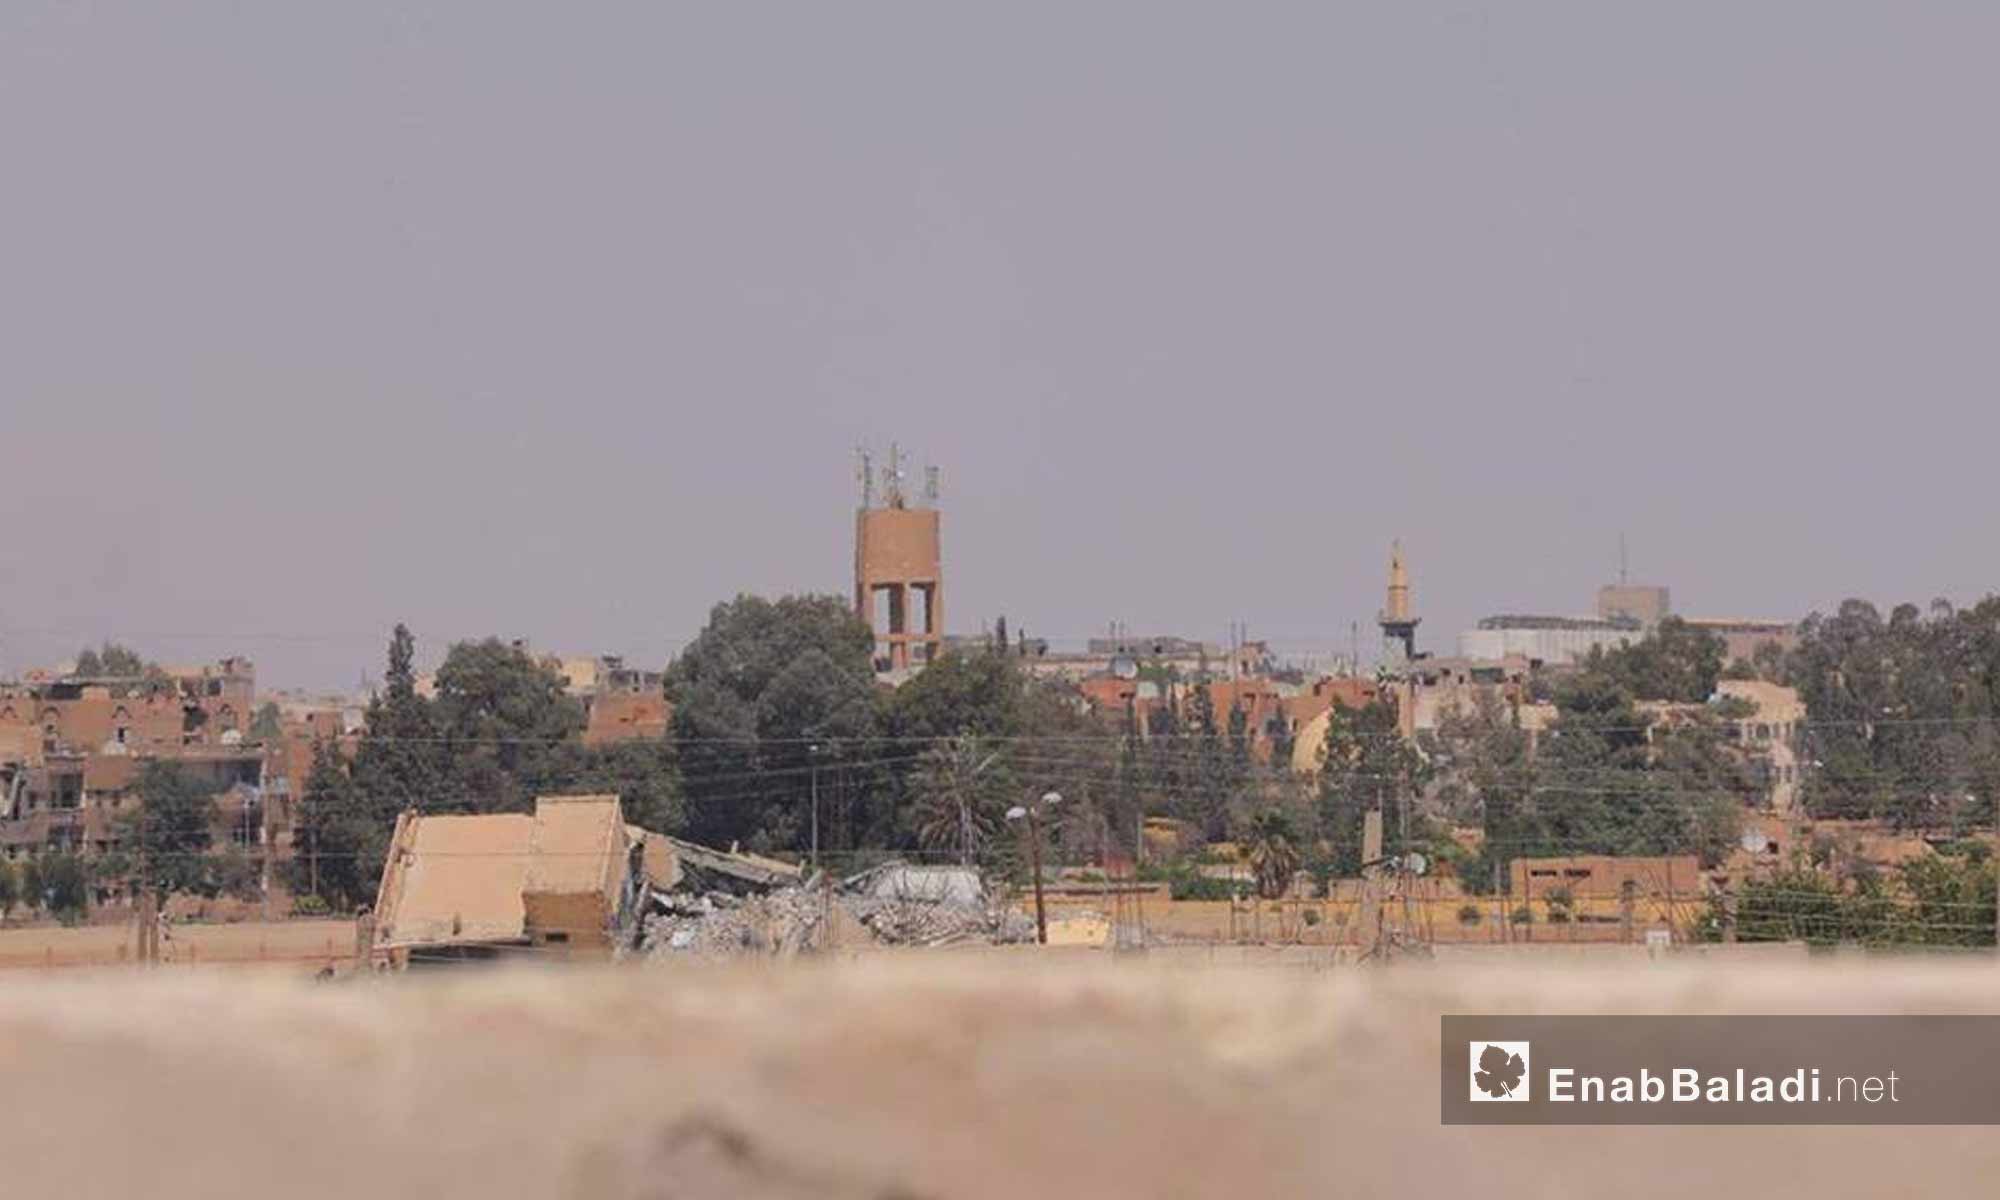 حي الصناعة في مدينة الرقة بعد سيطرة قوات سوريا الديموقراطية عليه - 28 تموز 2017 - (عنب بلدي)